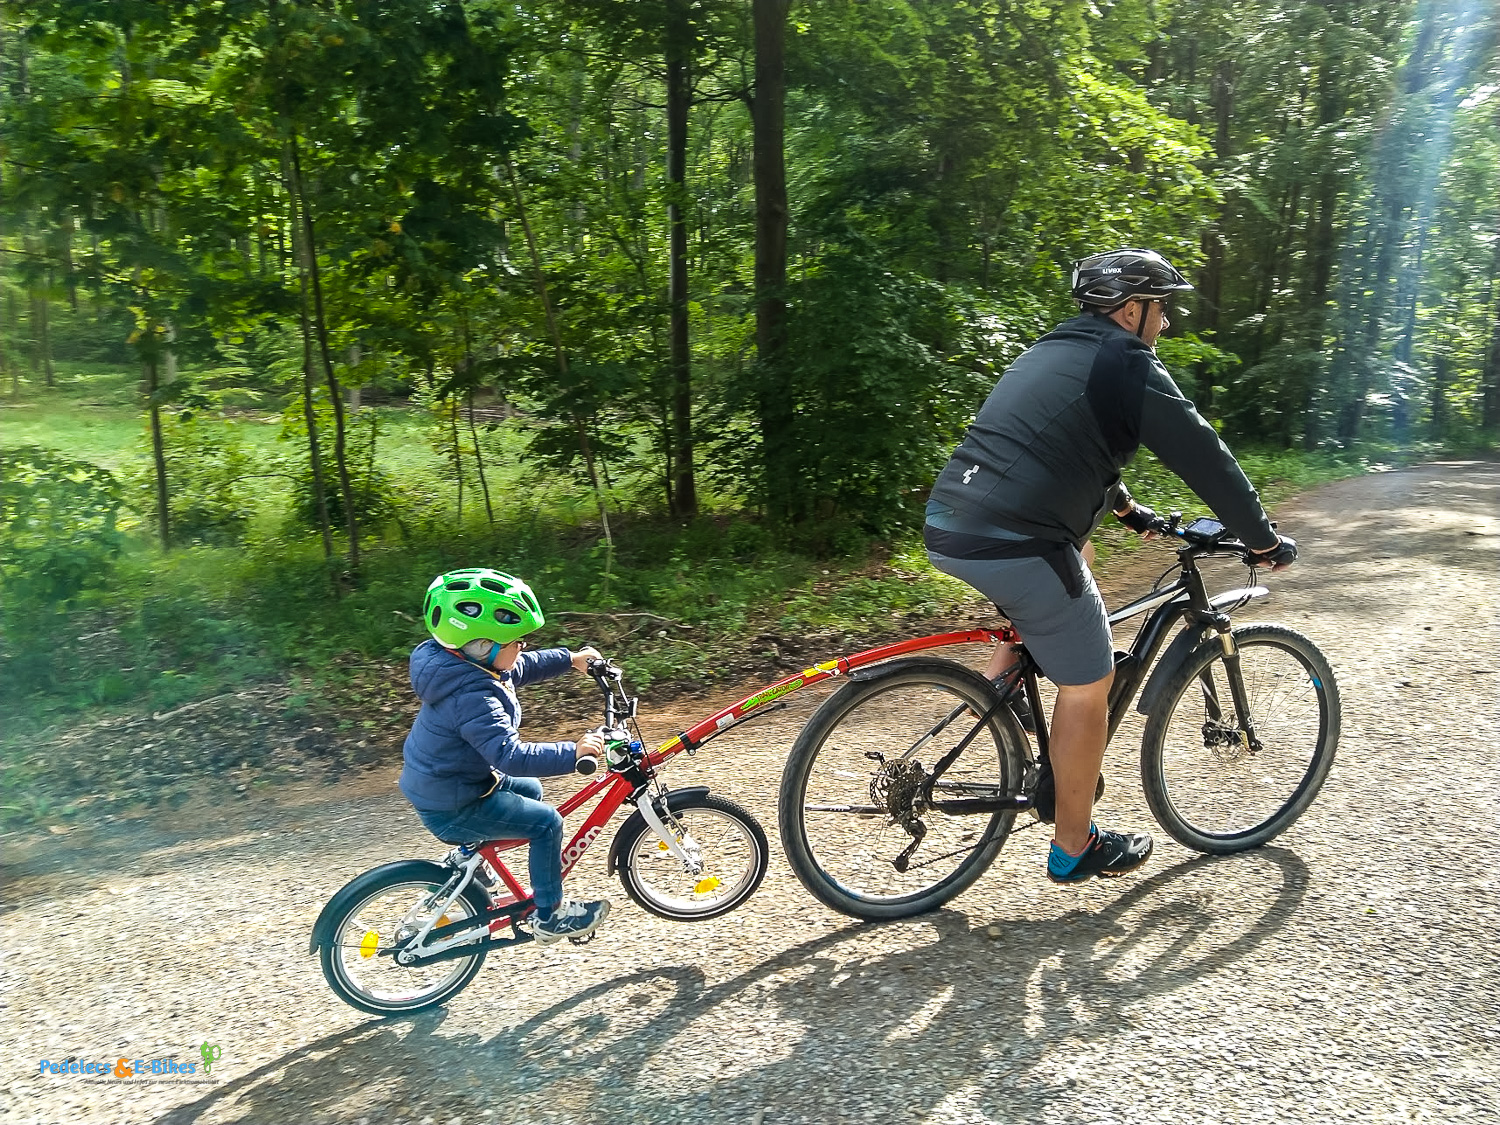 kommit® Fahrradleine Zugsystem für Fahrräder und E-Bikes Seilsystem perfekt  für Kinder, mit kommit kannst du dein Kind oder deinen Bike-Buddy bergauf  unterstützen